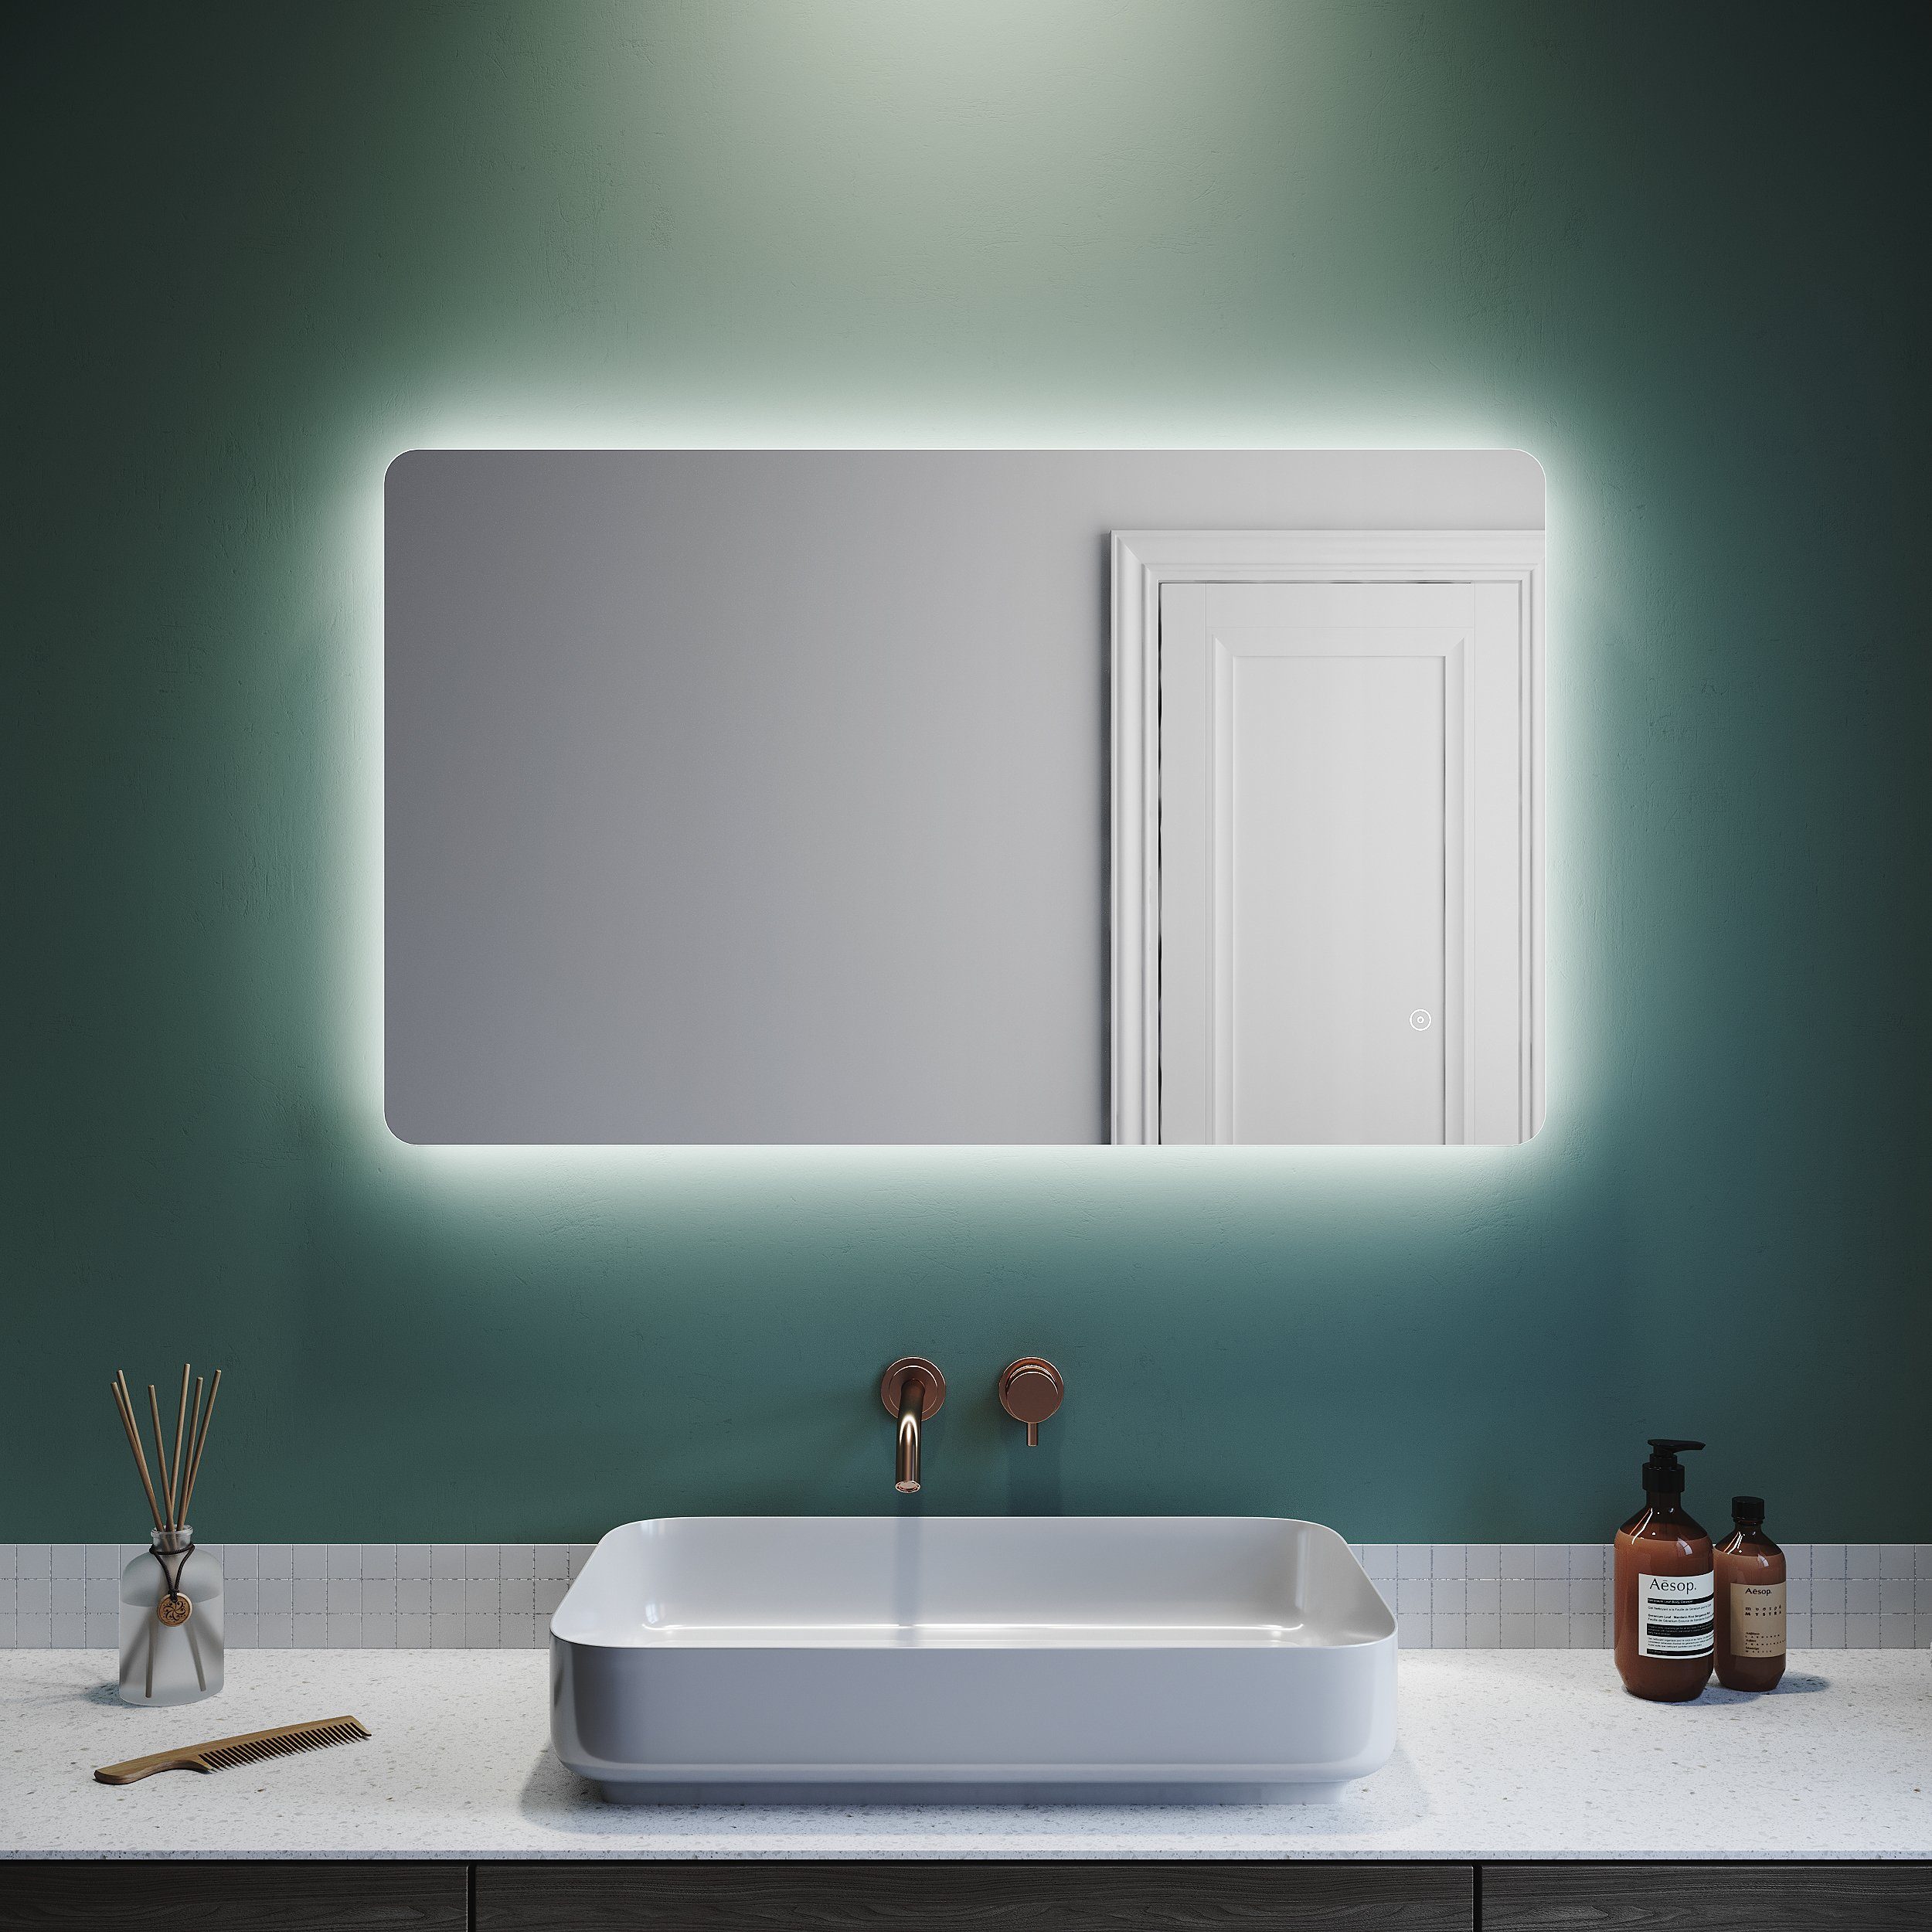 SONNI Badspiegel »Badspiegel mit beleuchtung, 100 x 60 cm, kaltweiß,  LED-Beleuchtung beschlagfrei Lichtspiegel LED Spiegel Wandspiegel mit  Touch-Schalter IP44 energiesparend«